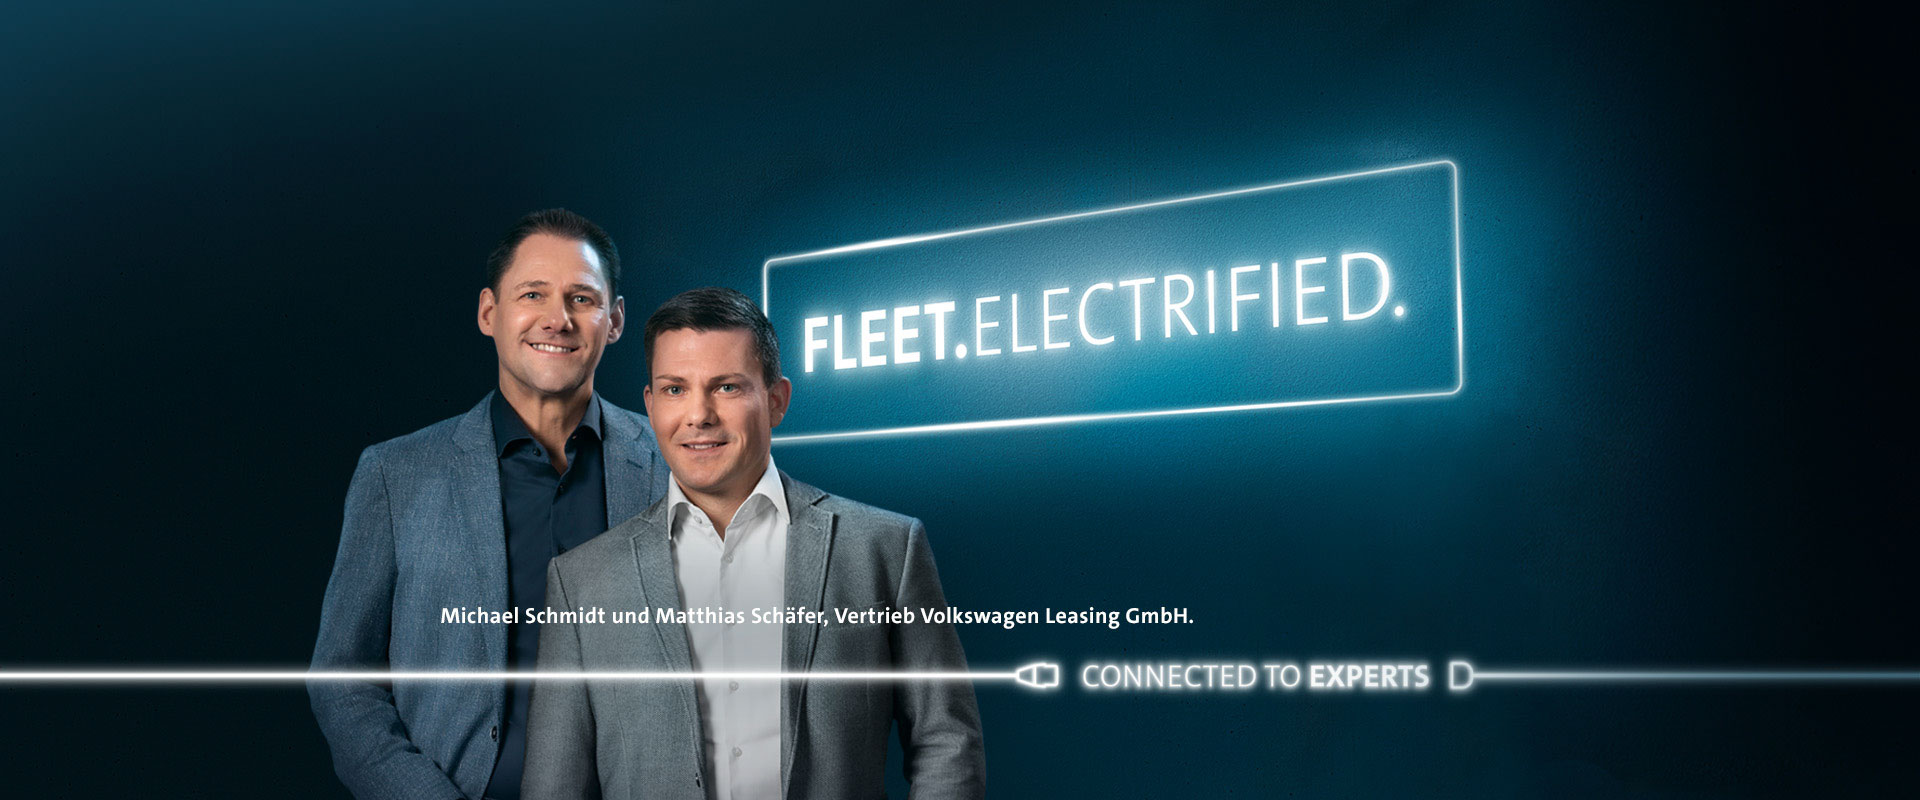 Michael Schmidt und Matthias Schäfer, Vertrieb Volkswagen Leasing GmbH.